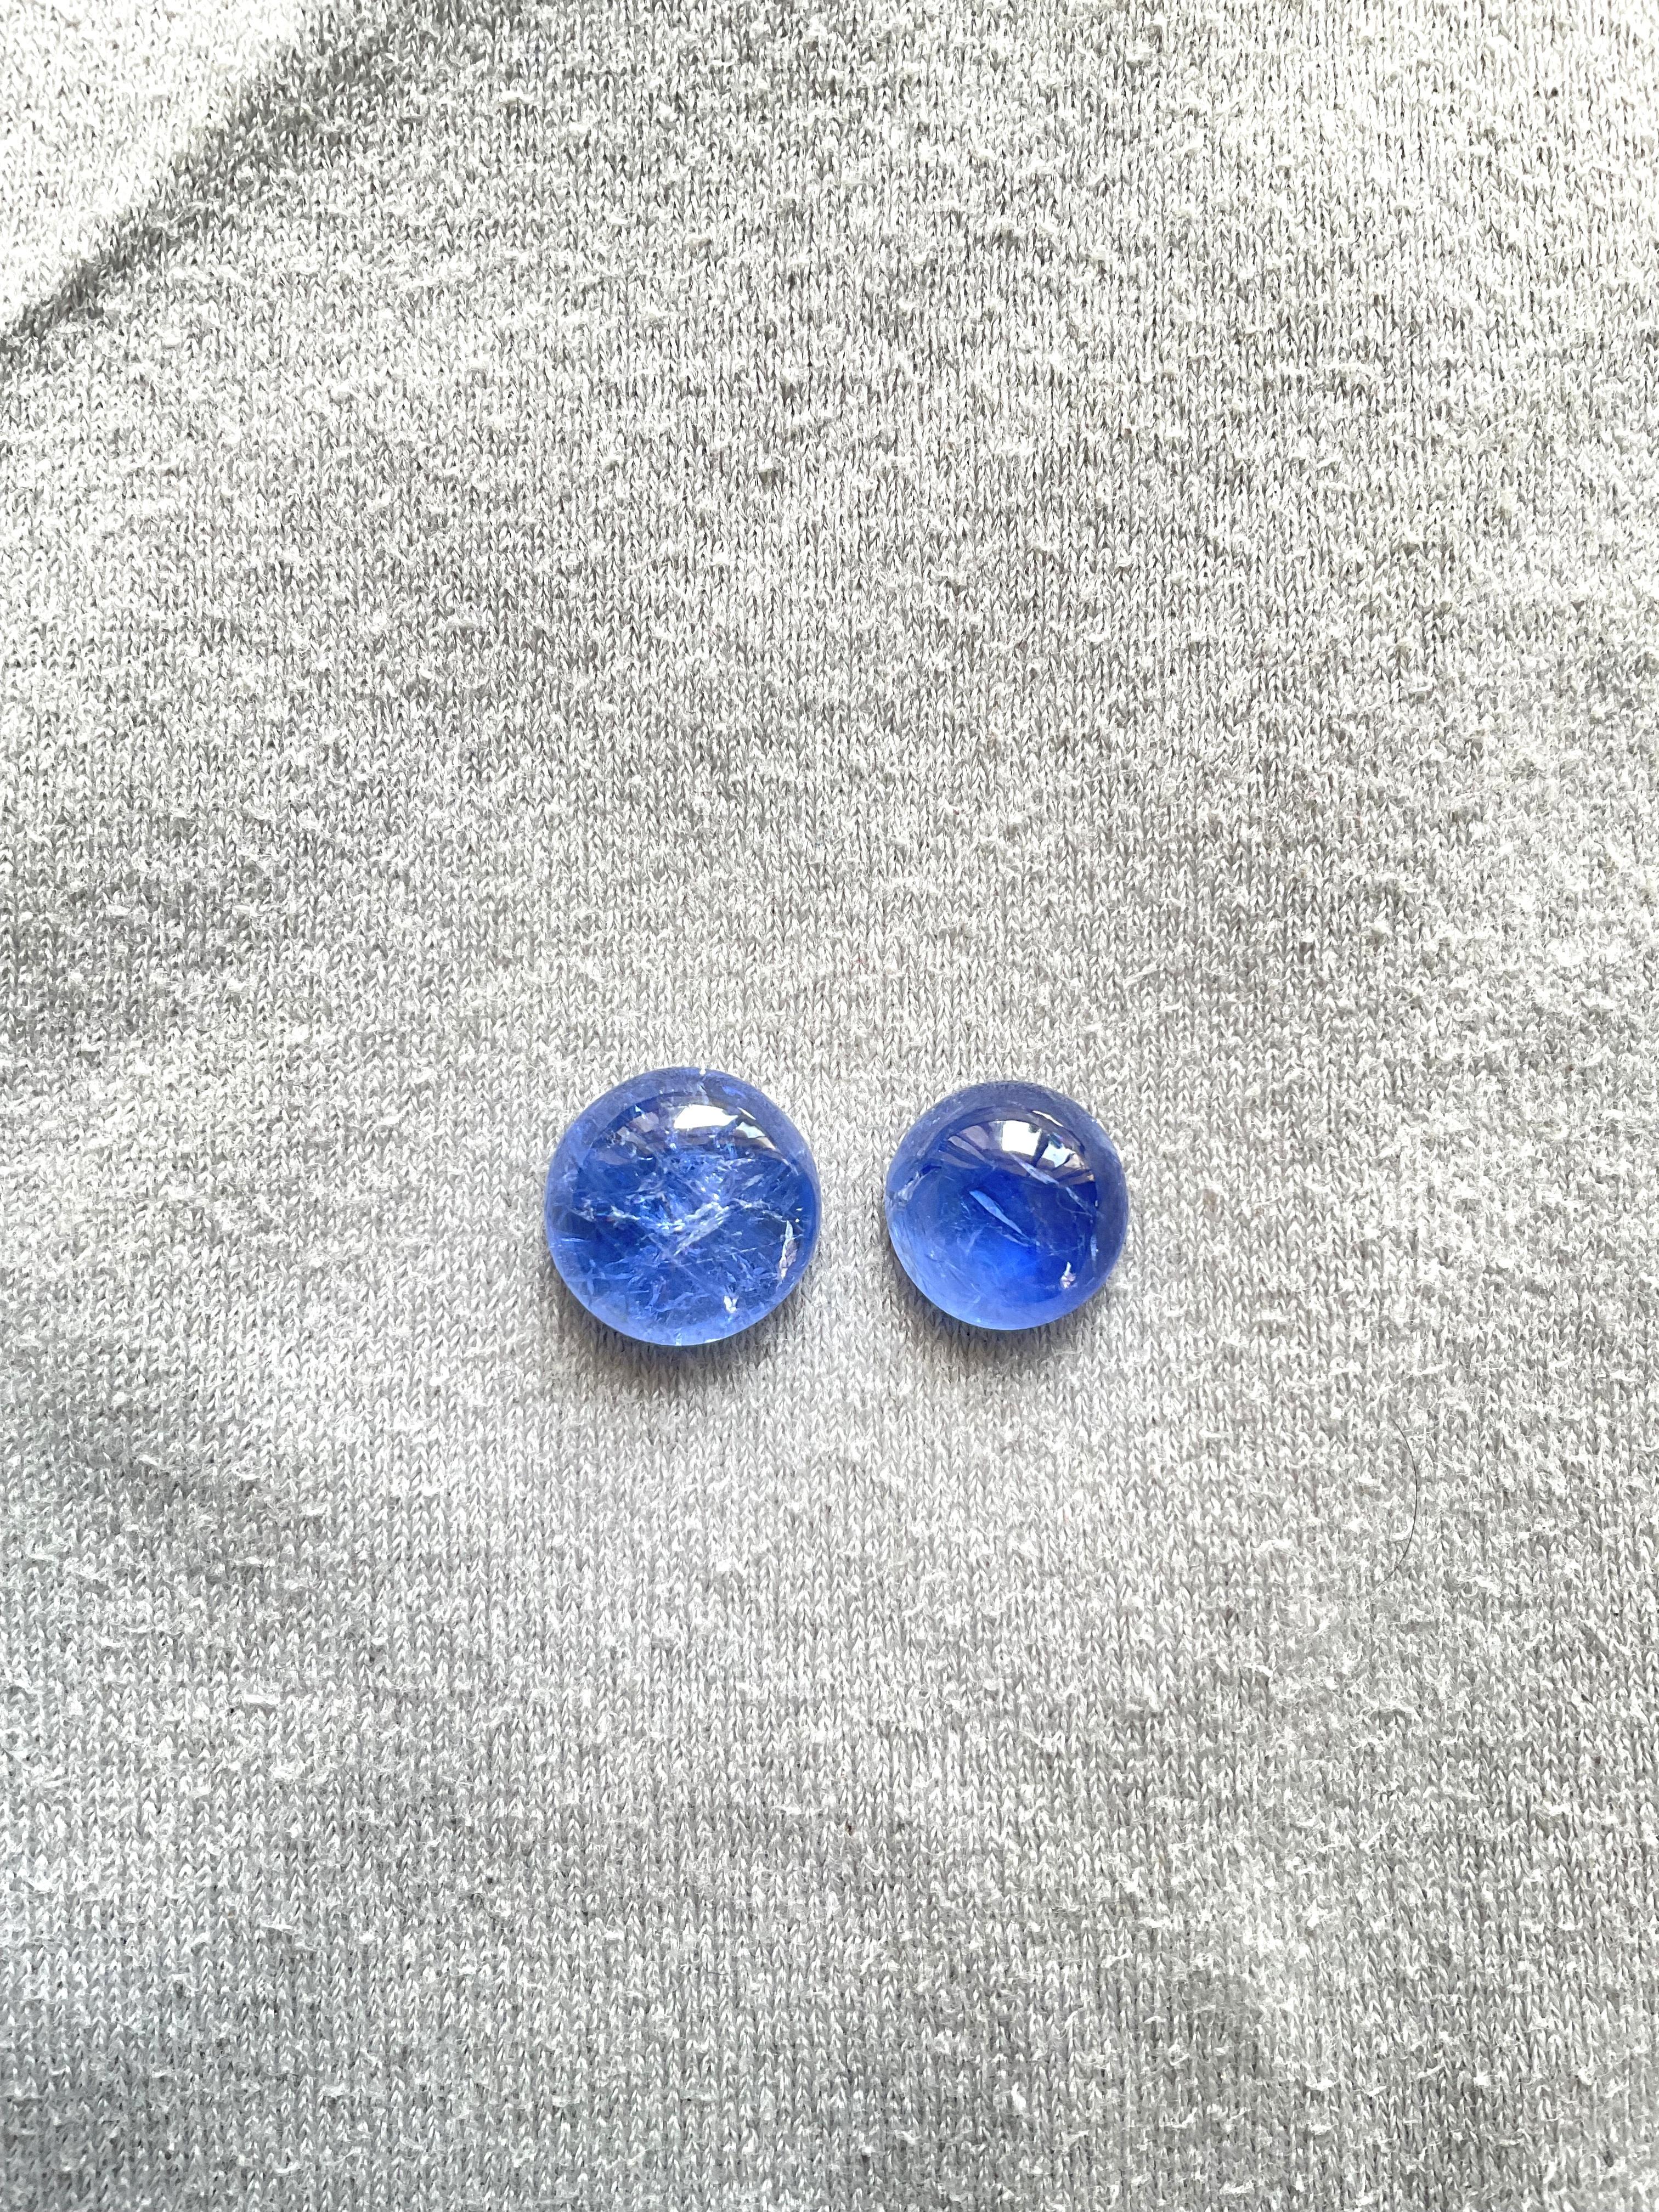 16,41 Karat Burmese Blue Sapphire No Heat Runder Cabochon Natürlicher Saphir Edelstein für Damen oder Herren im Angebot